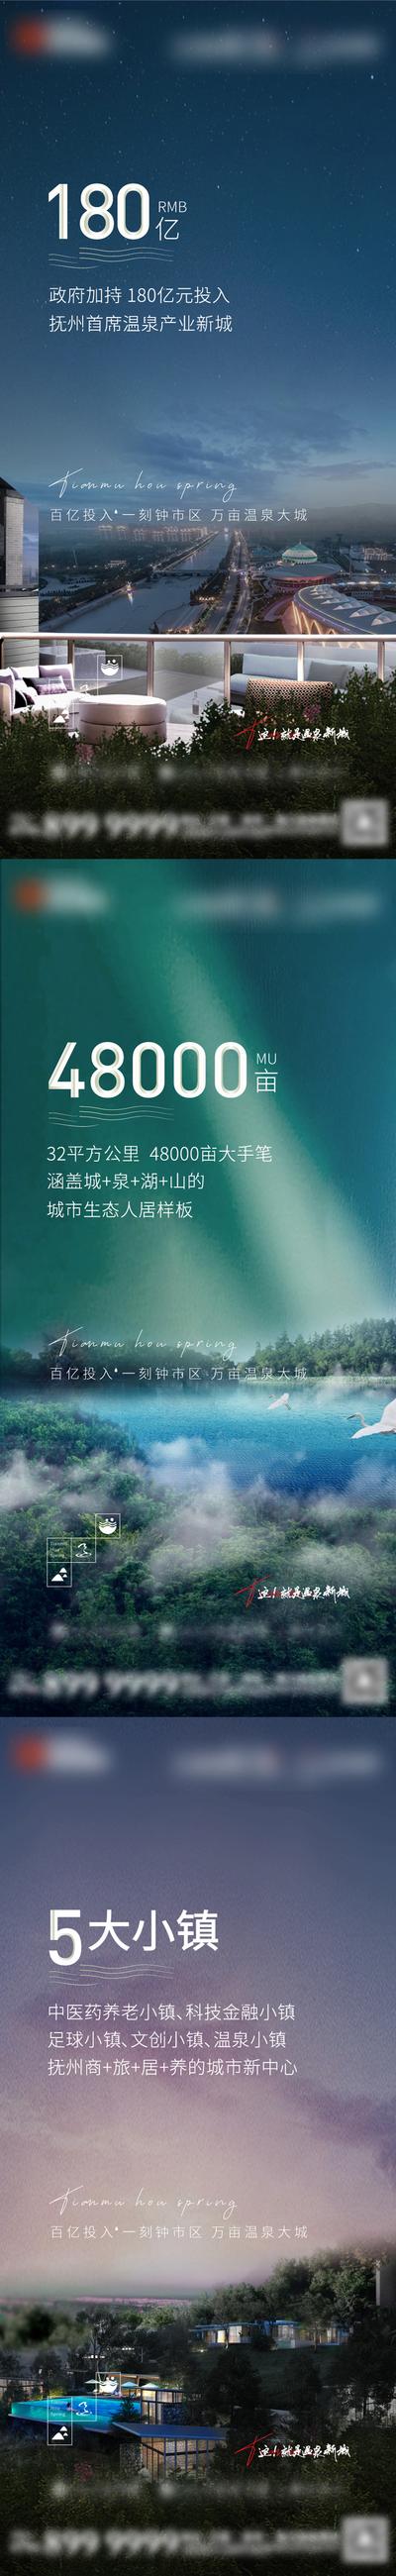 【南门网】广告 海报 地产 文旅 度假 小镇 温泉 价值点 系列 品质 简约